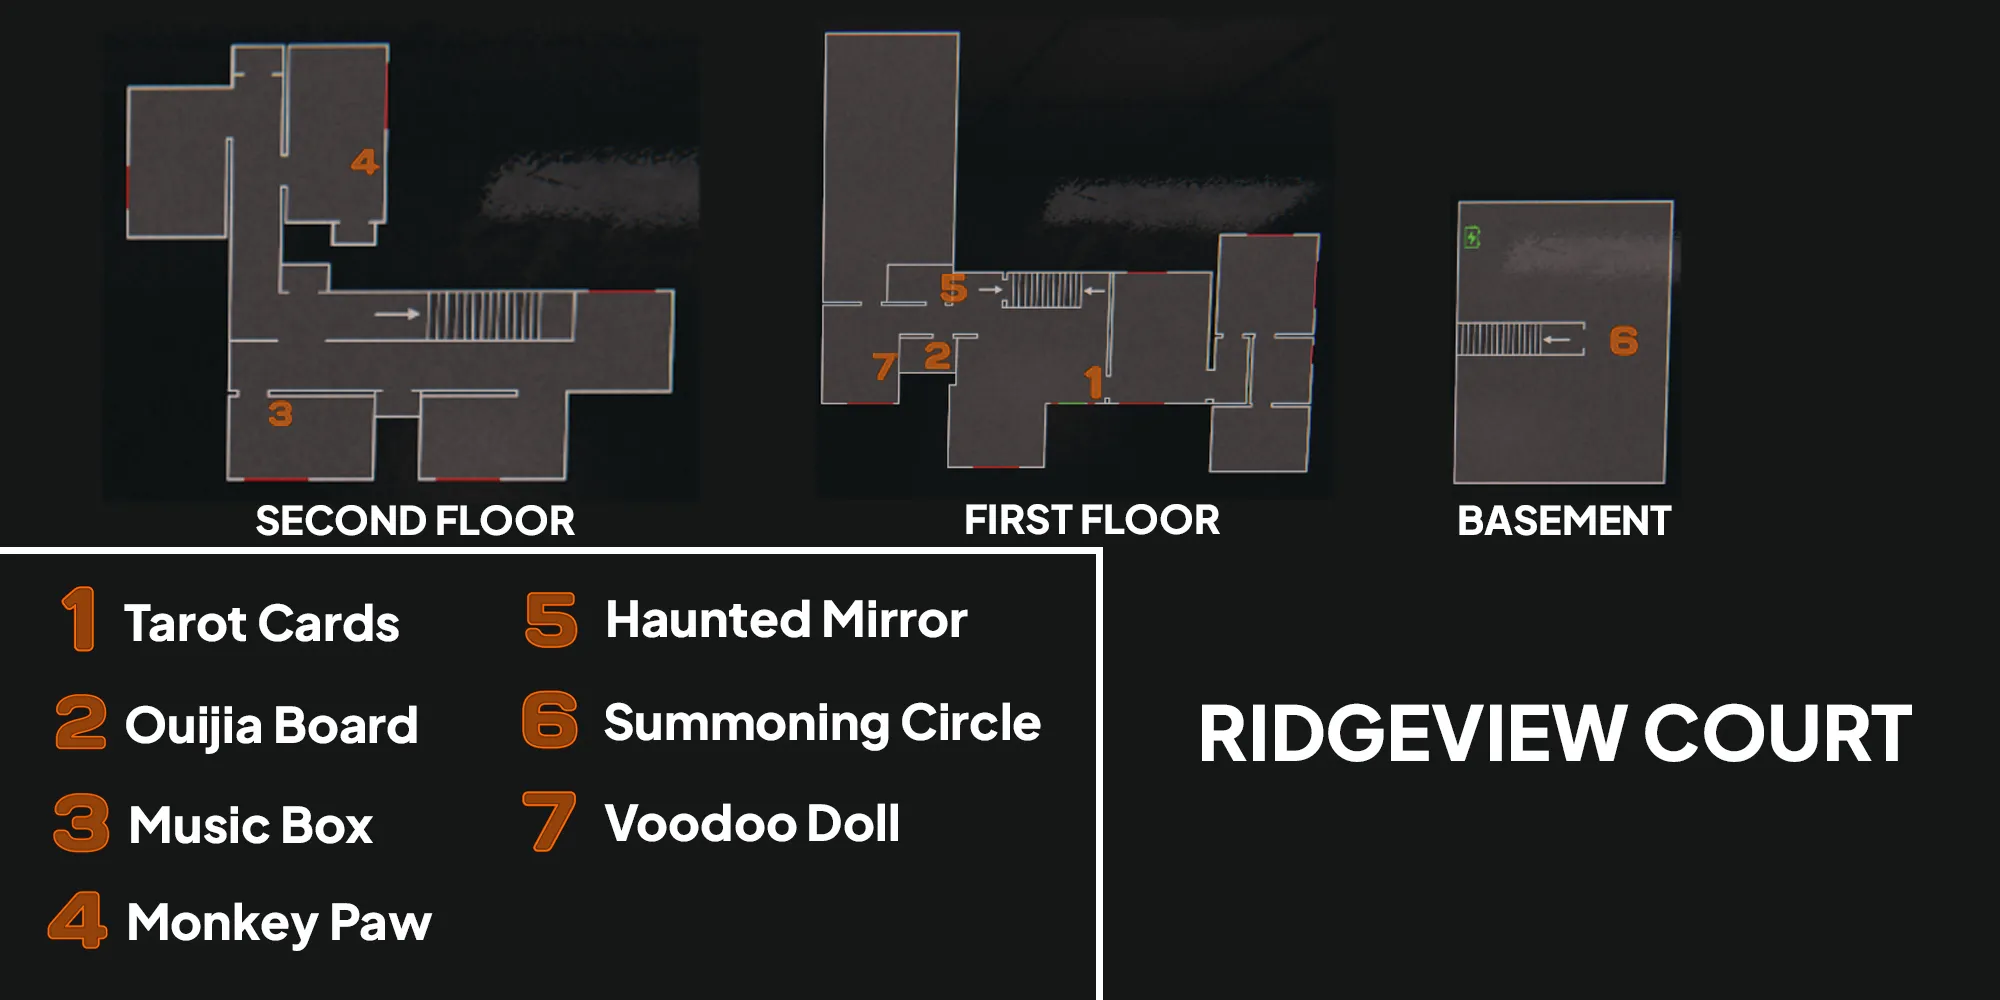 Изображение показывает карту Ridgeview Court в игре Phasmophobia с оранжевыми номерами, показывающими местоположение семи проклятых объектов.